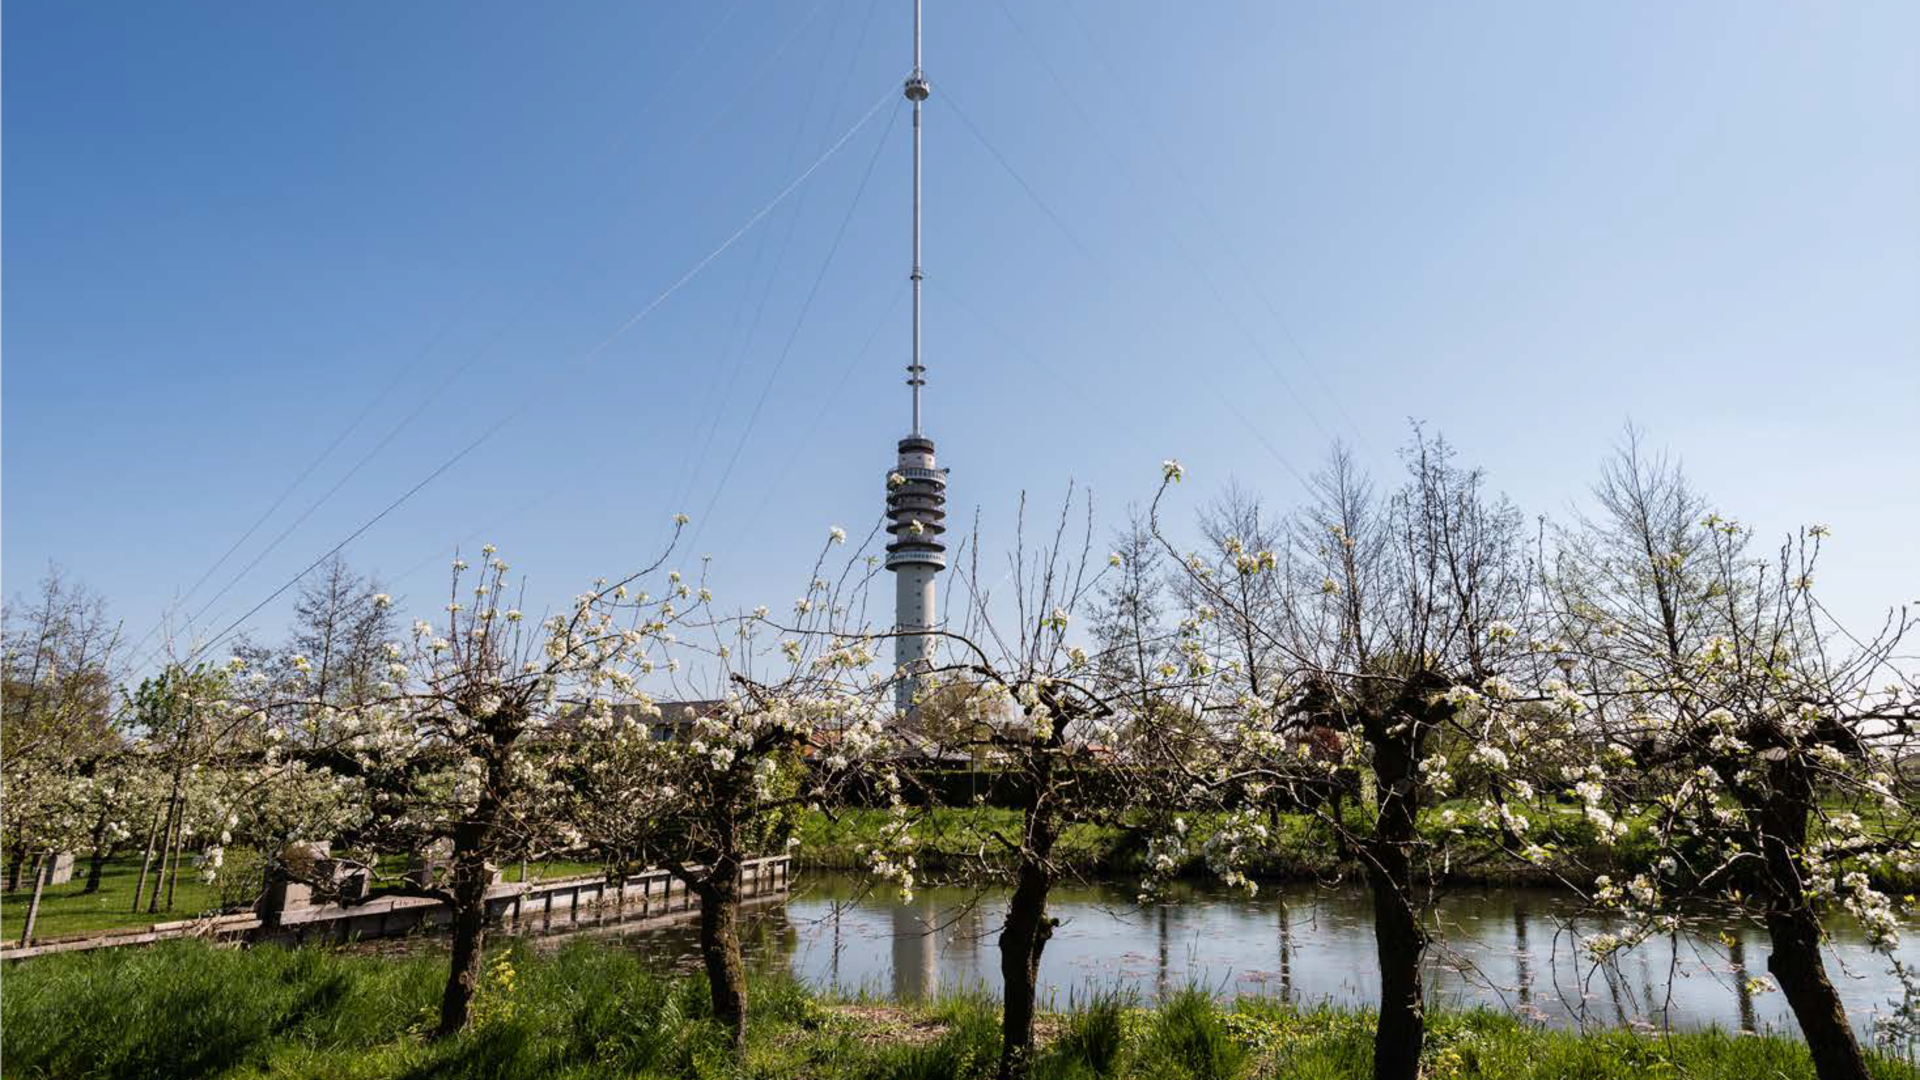 Foto fruitbomen met zendmast op achtergrond